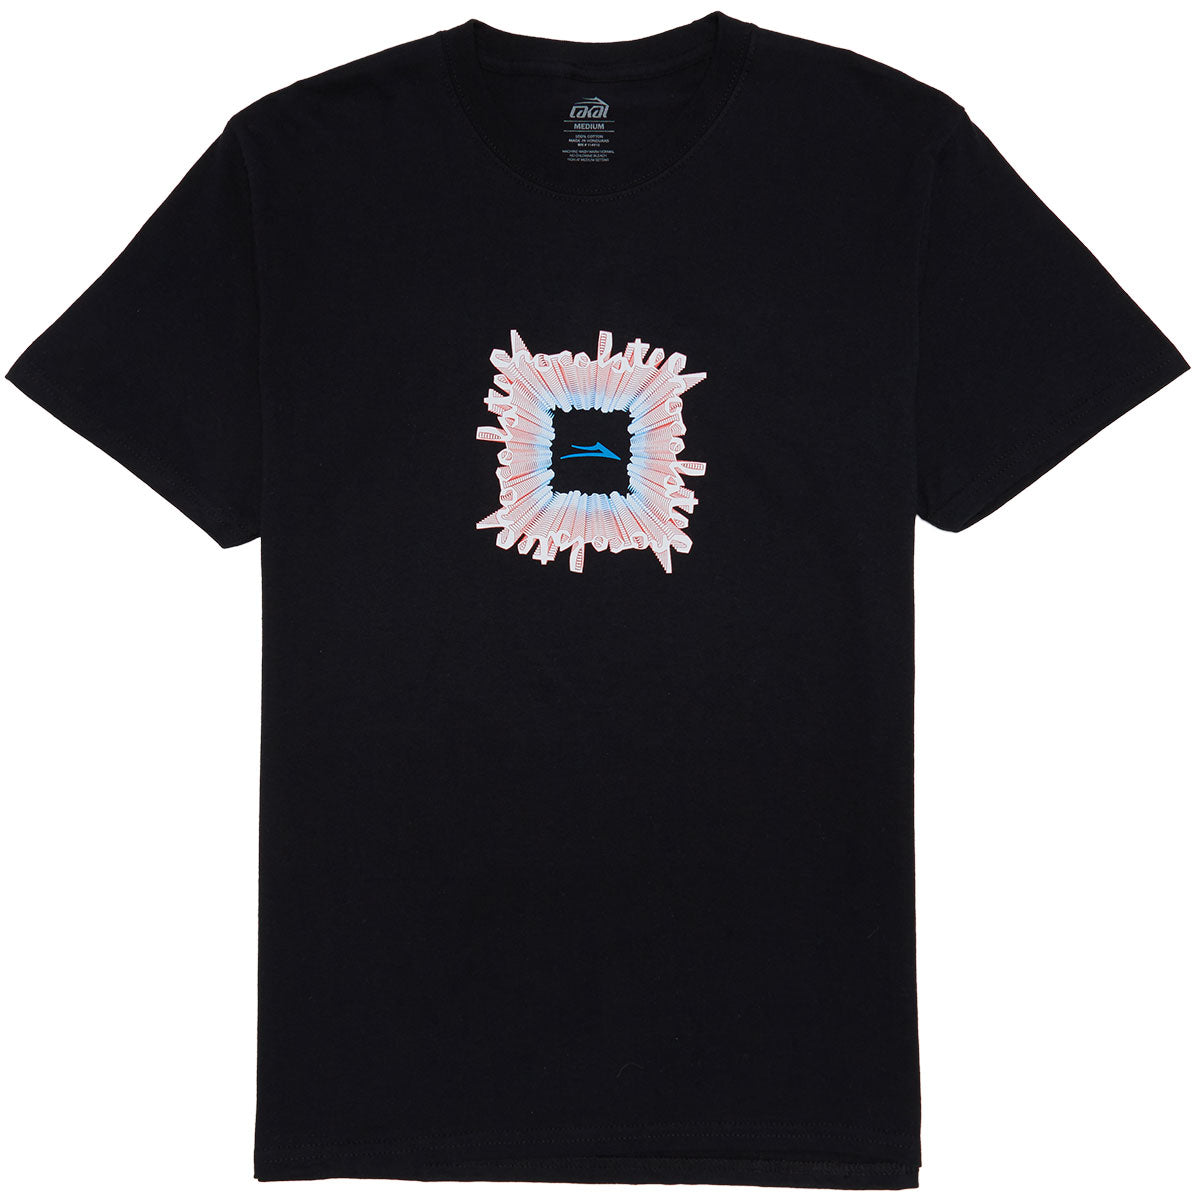 Lakai Vortex T-Shirt - Black image 1